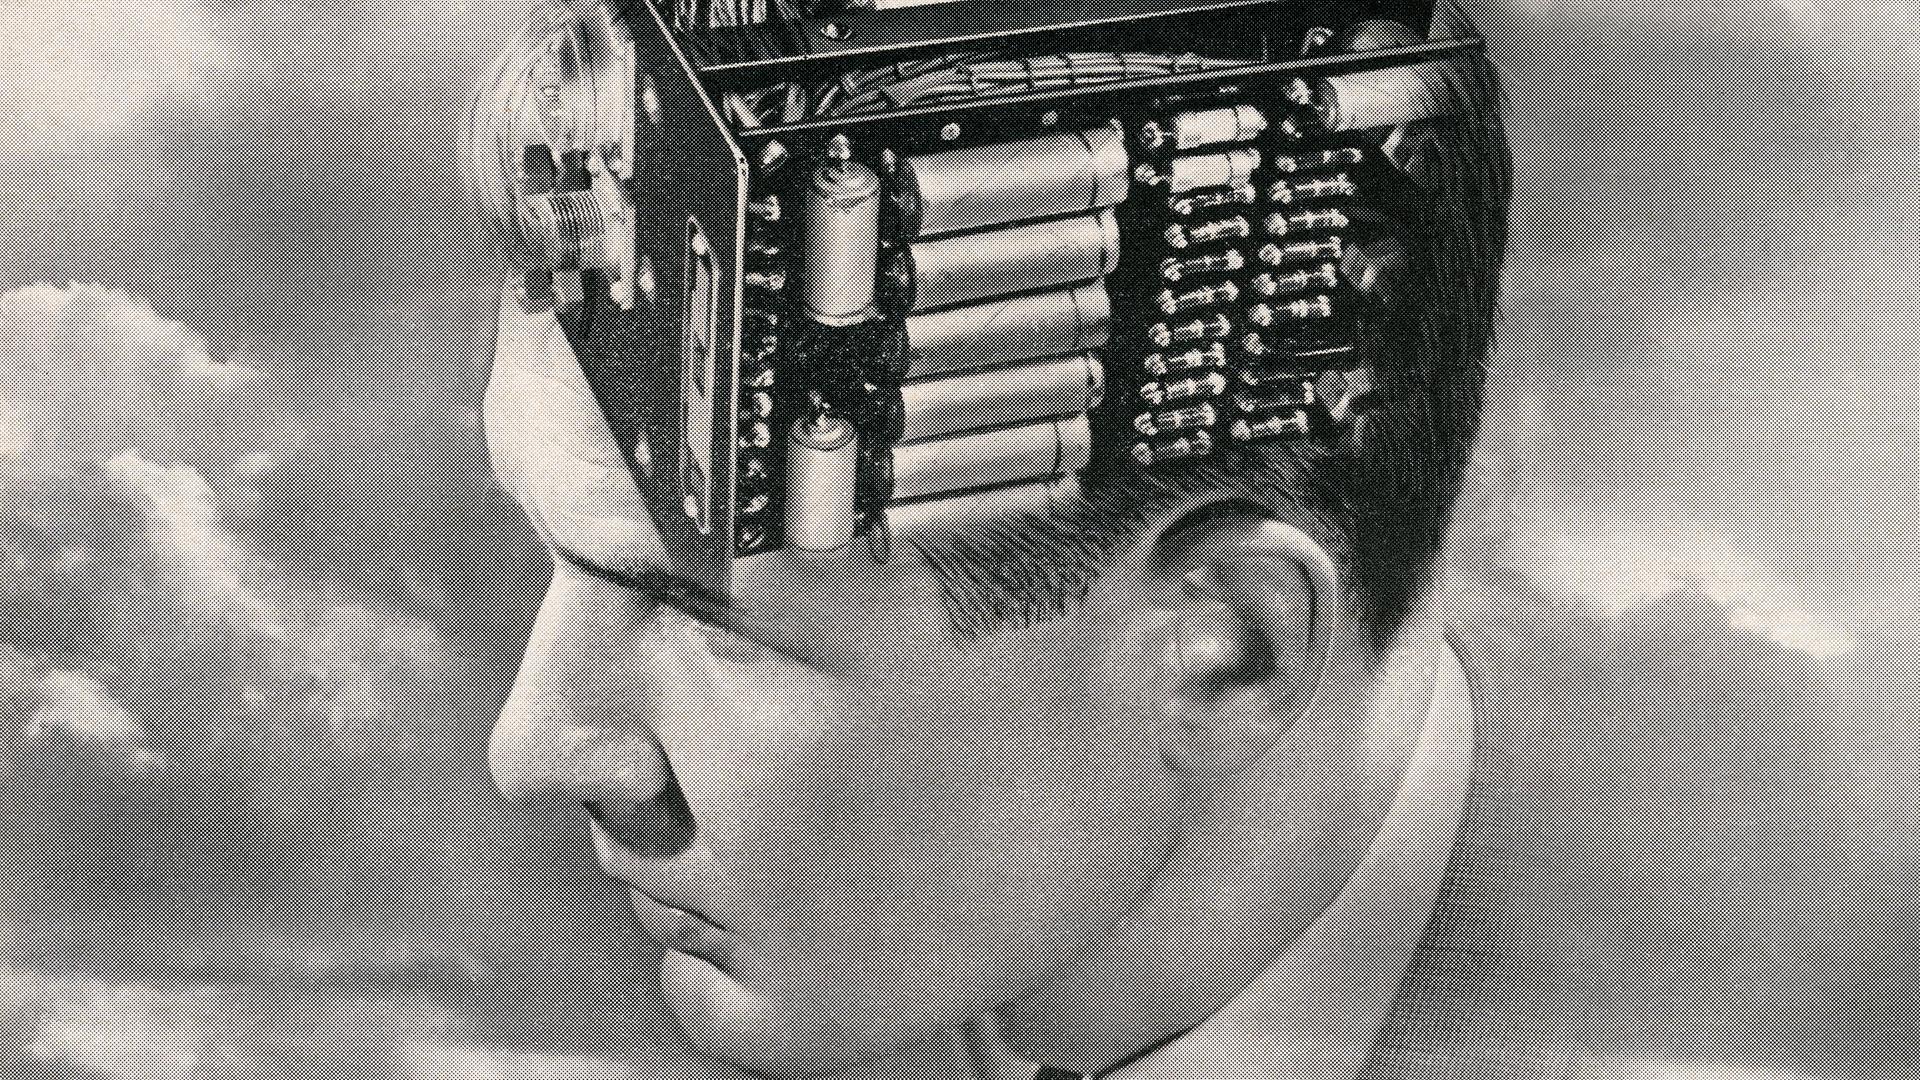 Vintage-Illustration des Kopfes eines jungen Mannes mit einer Montage einer elektronischen Leiterplatte anstelle des Gehirns.